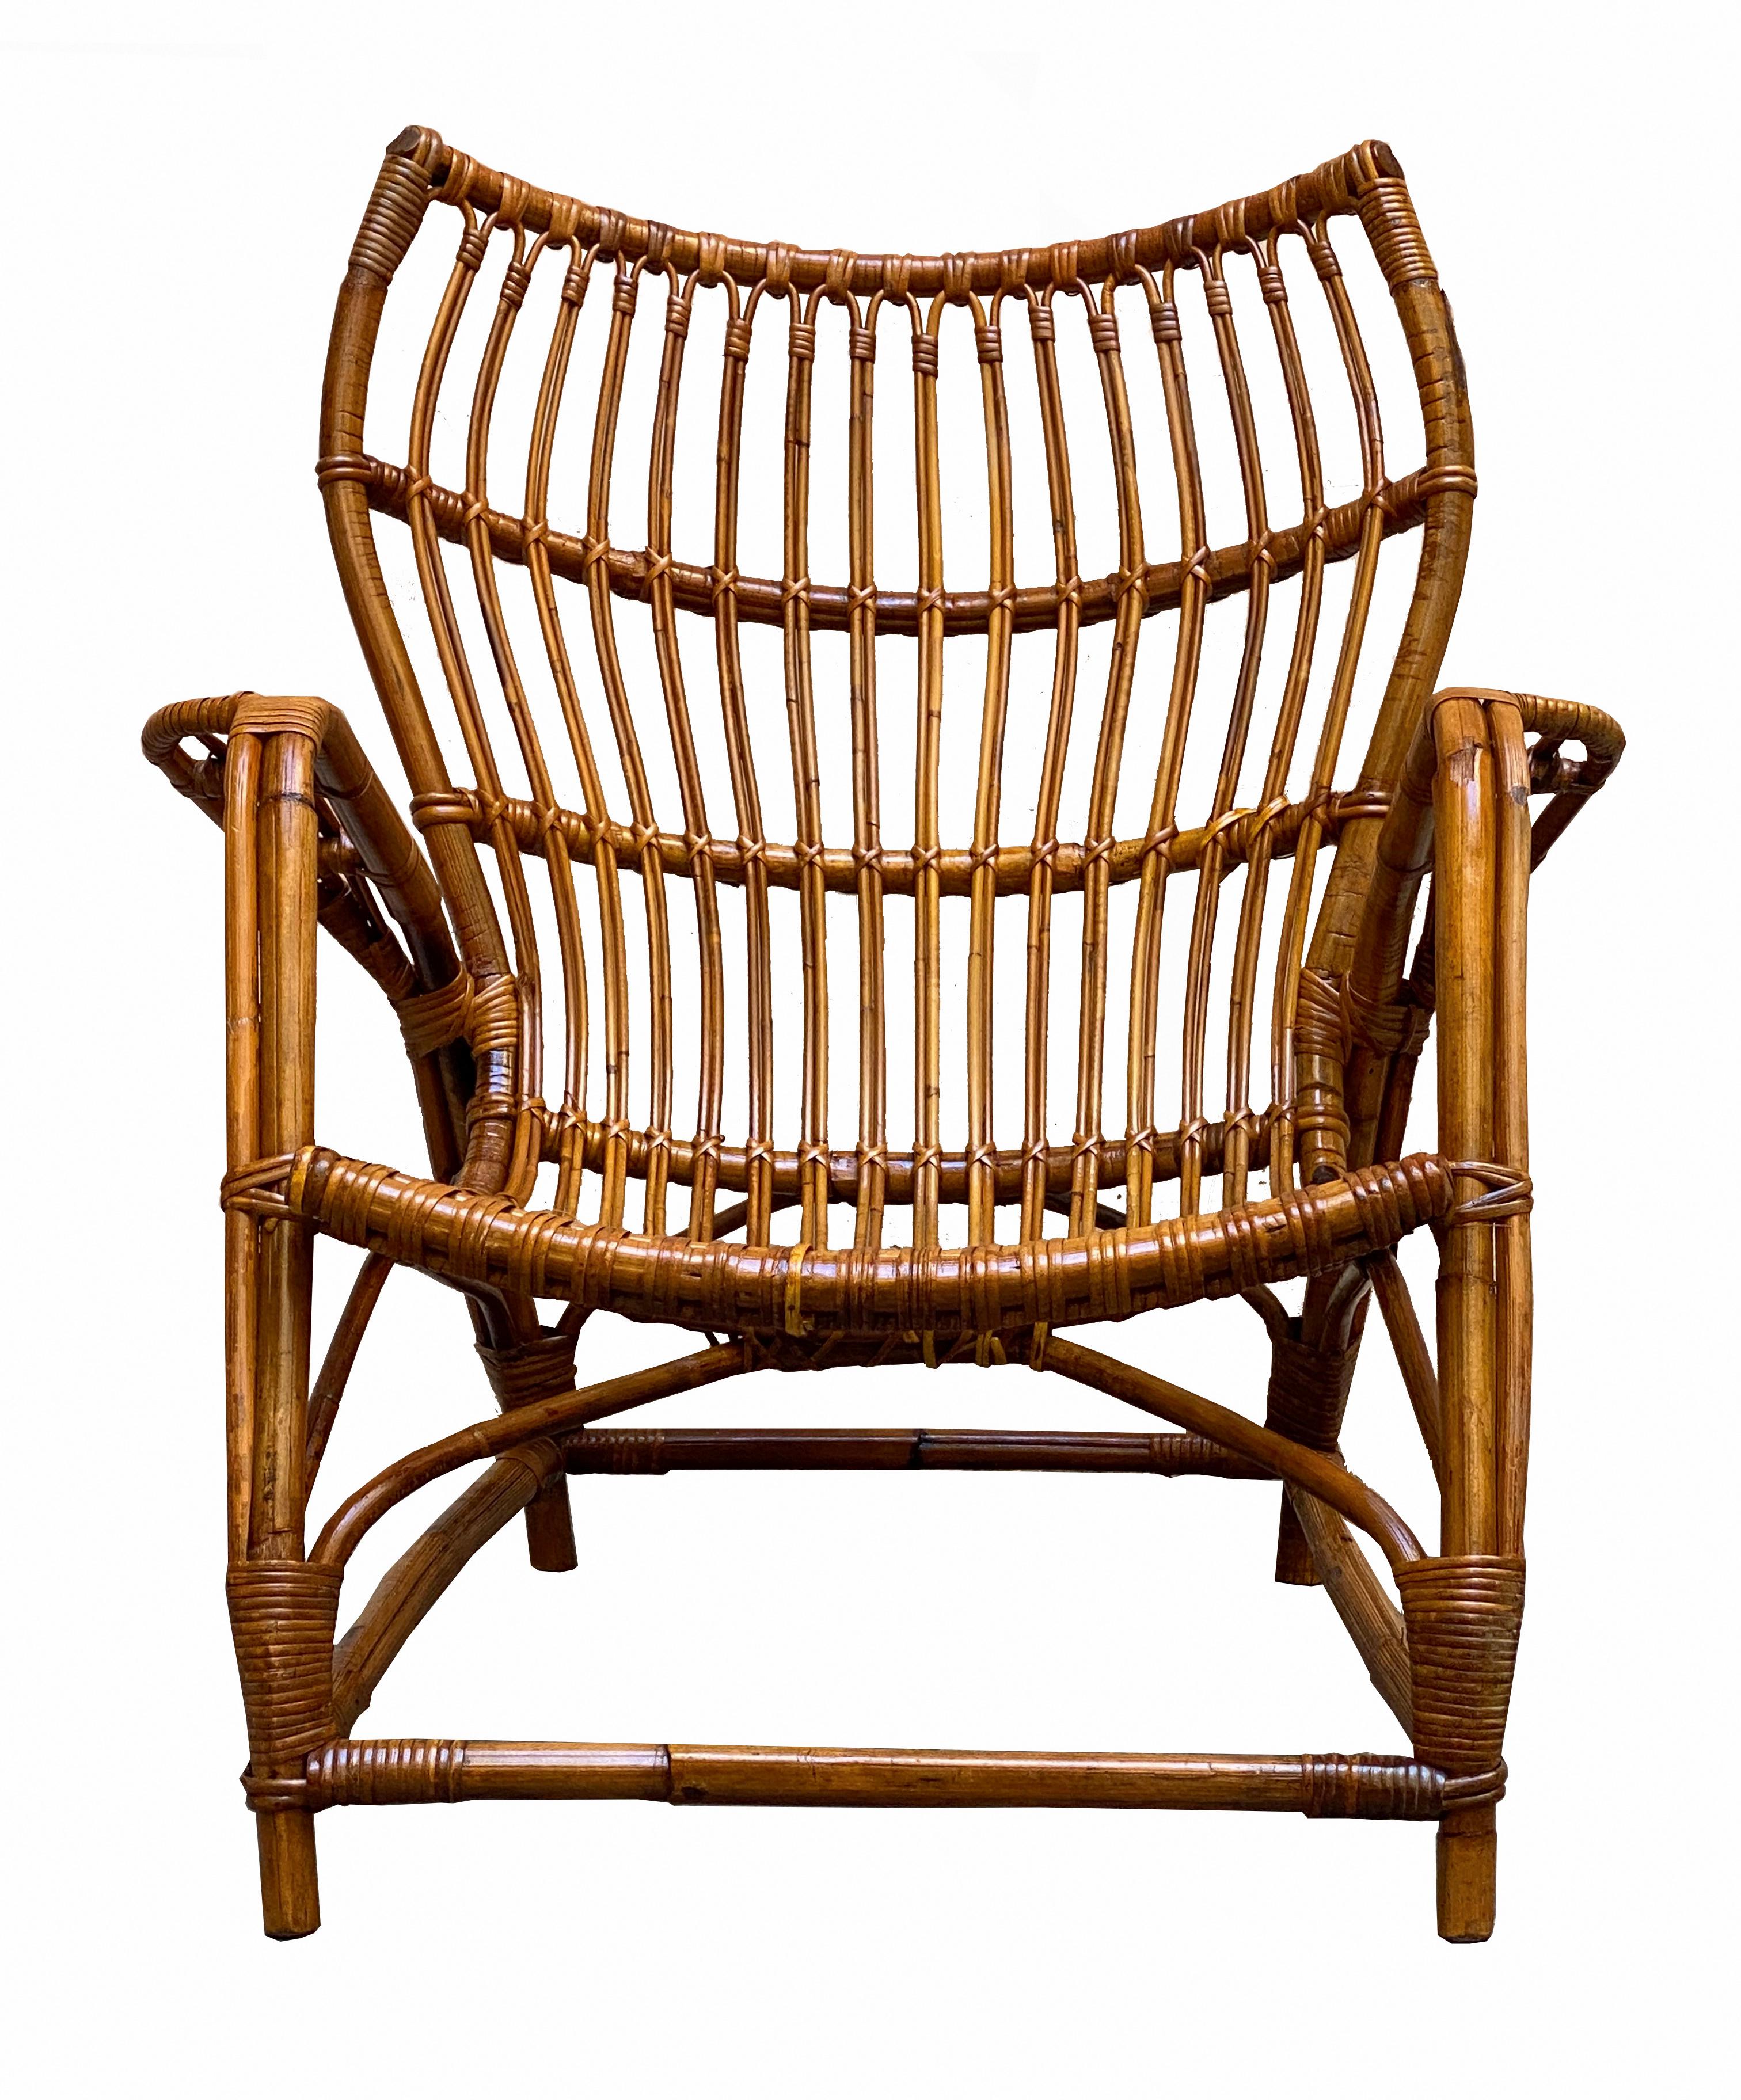 In Italien hergestellter Sessel aus den 1960er Jahren. Gebogener Bambus und geflochtener Rattanrahmen. Guter Gesamtzustand, einige Gebrauchsspuren, die auf den normalen Gebrauch im Laufe der Zeit zurückzuführen sind.